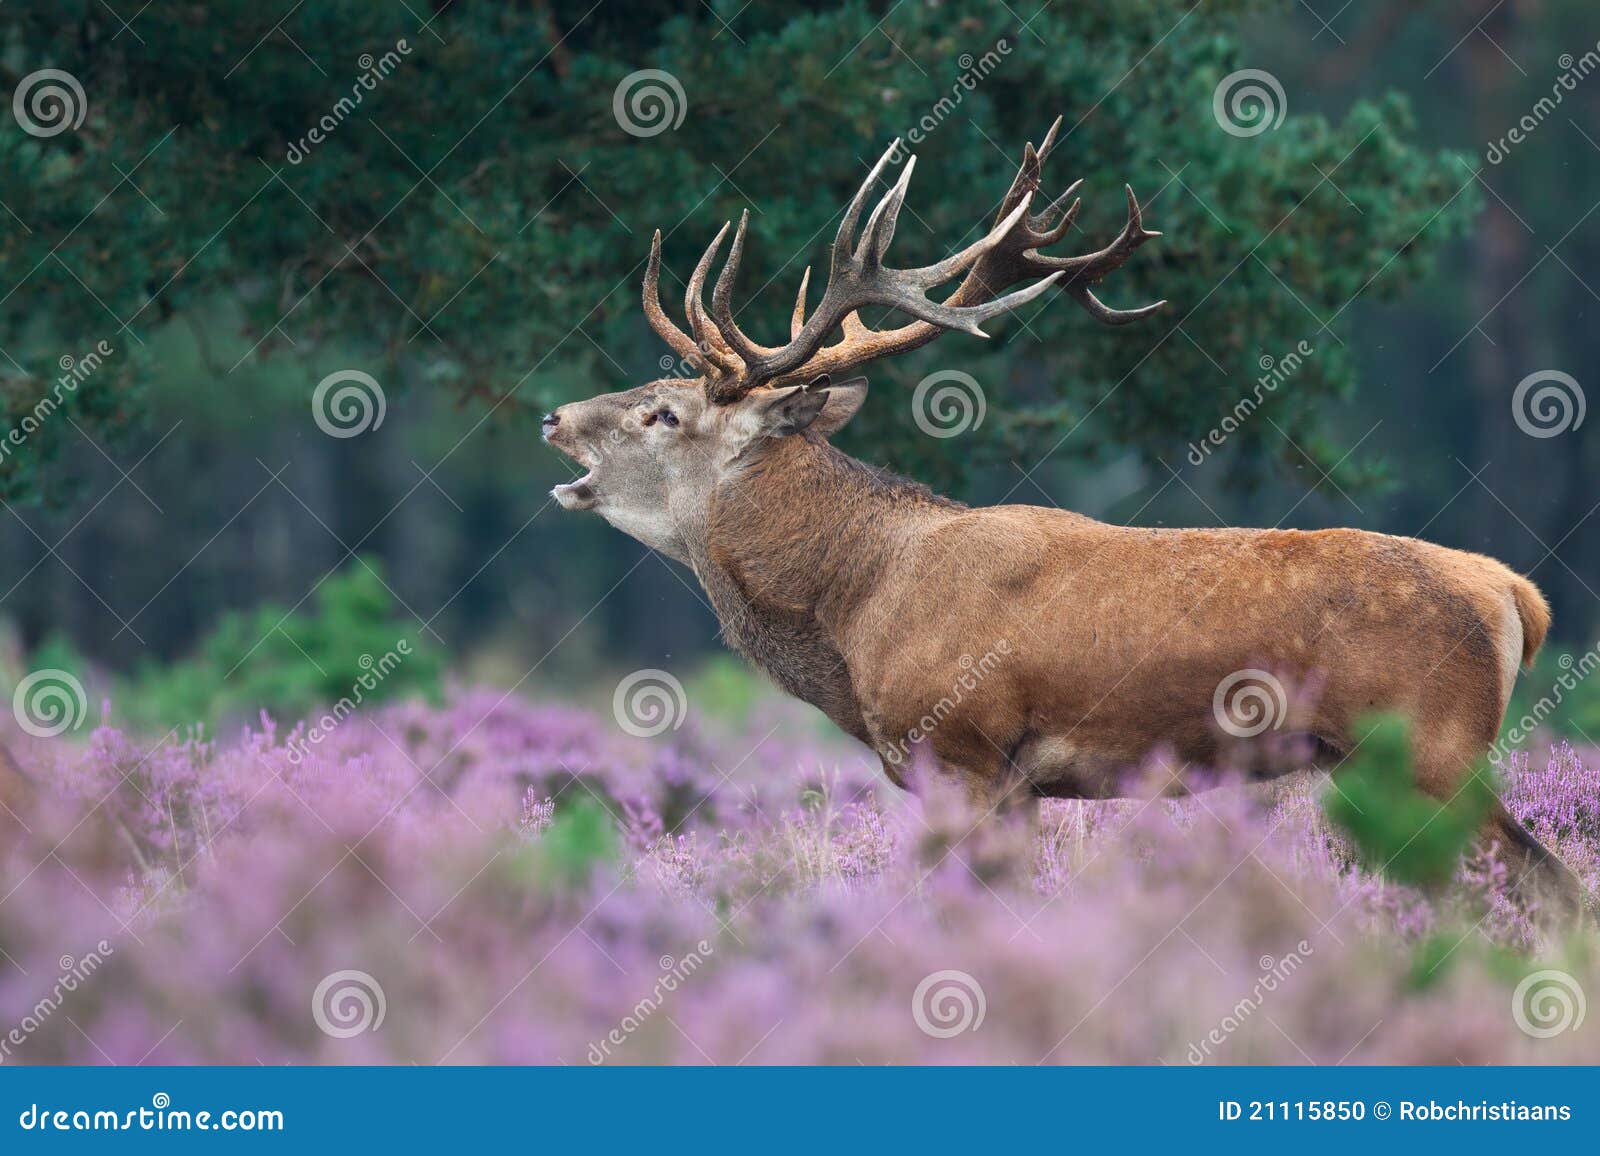 red deer during mating season